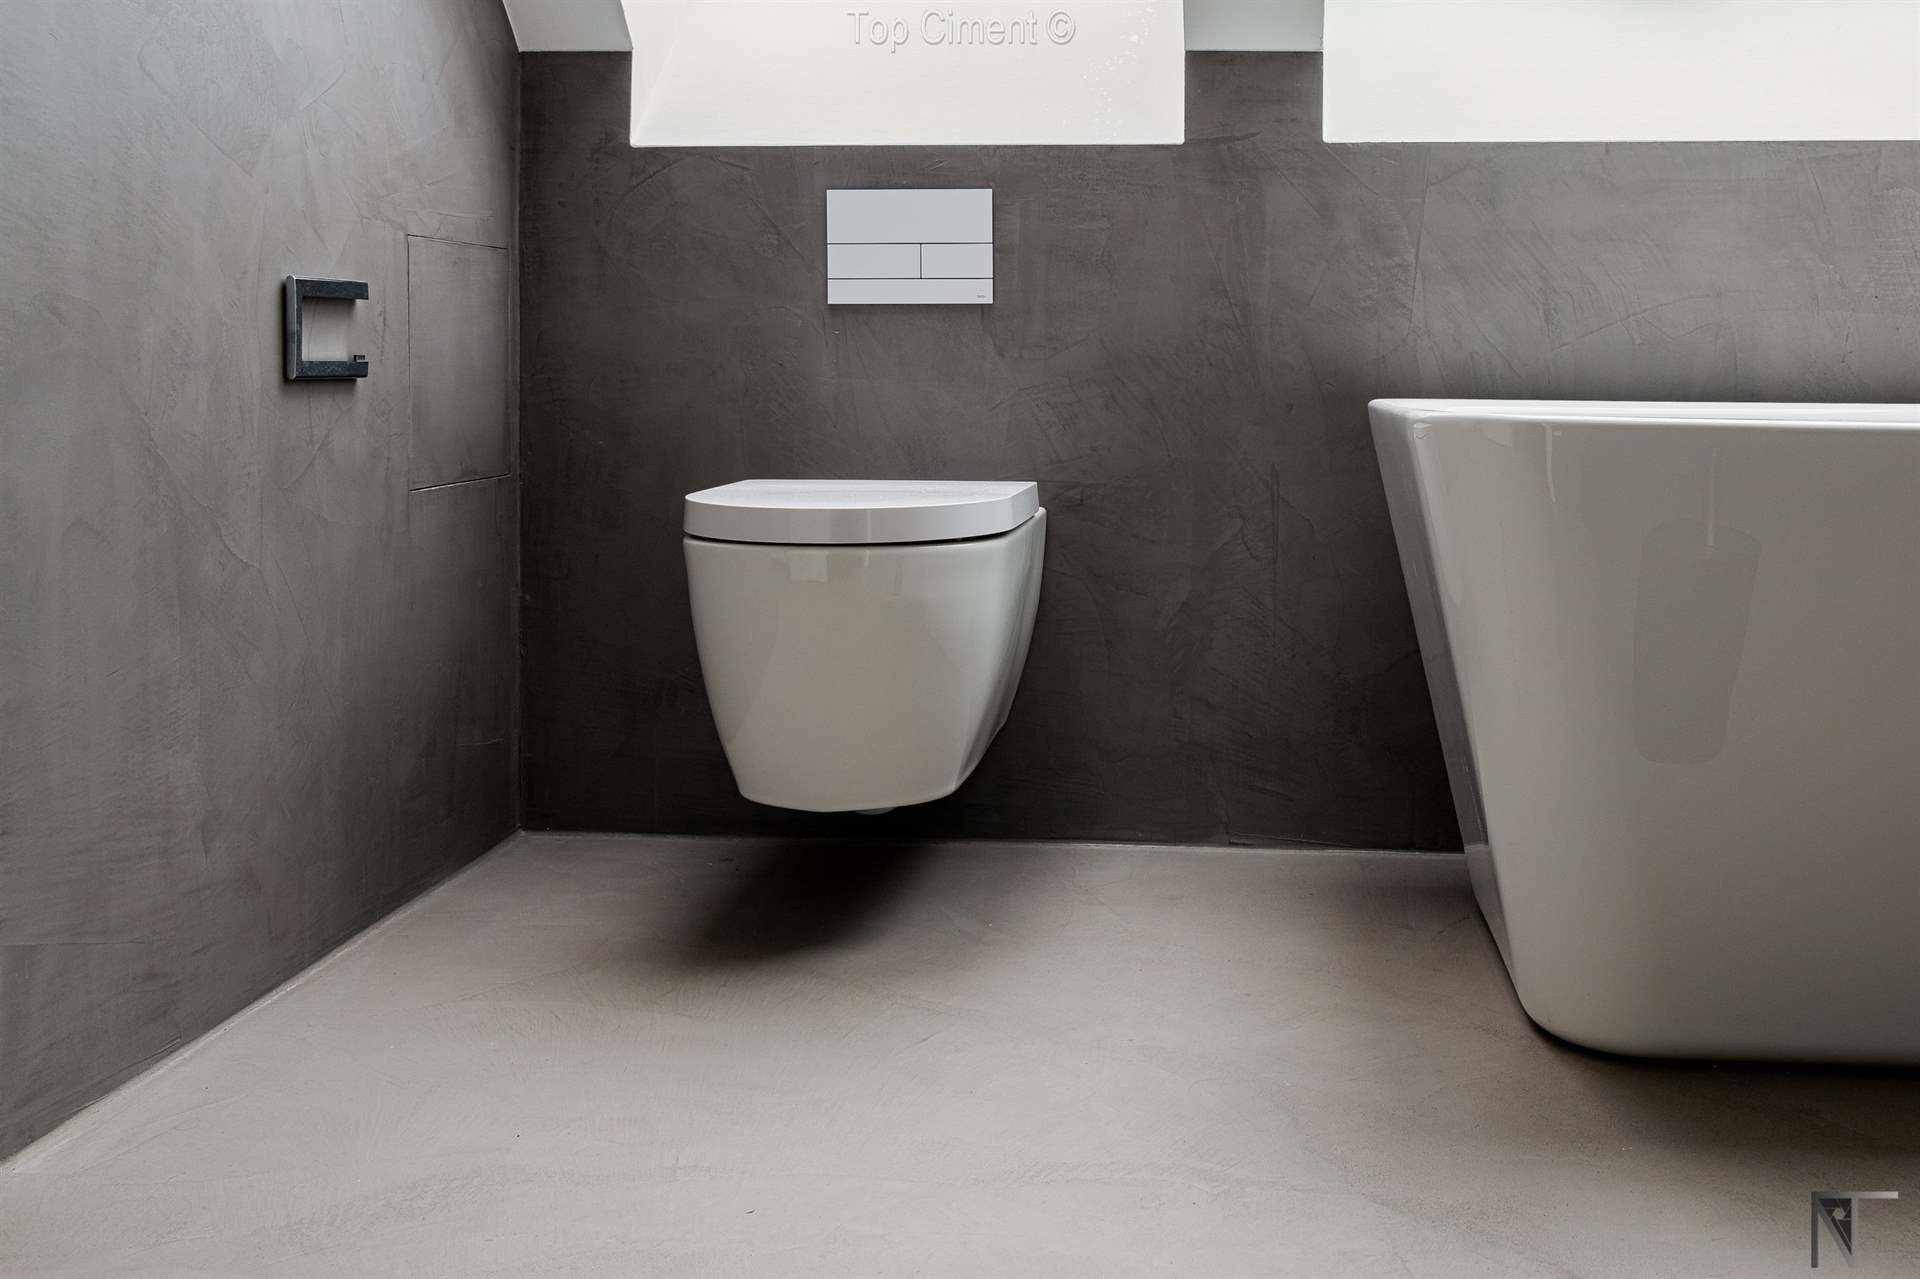 Ванная комната с обновленной плиткой, покрытой серым микроцементом на стенах и полу